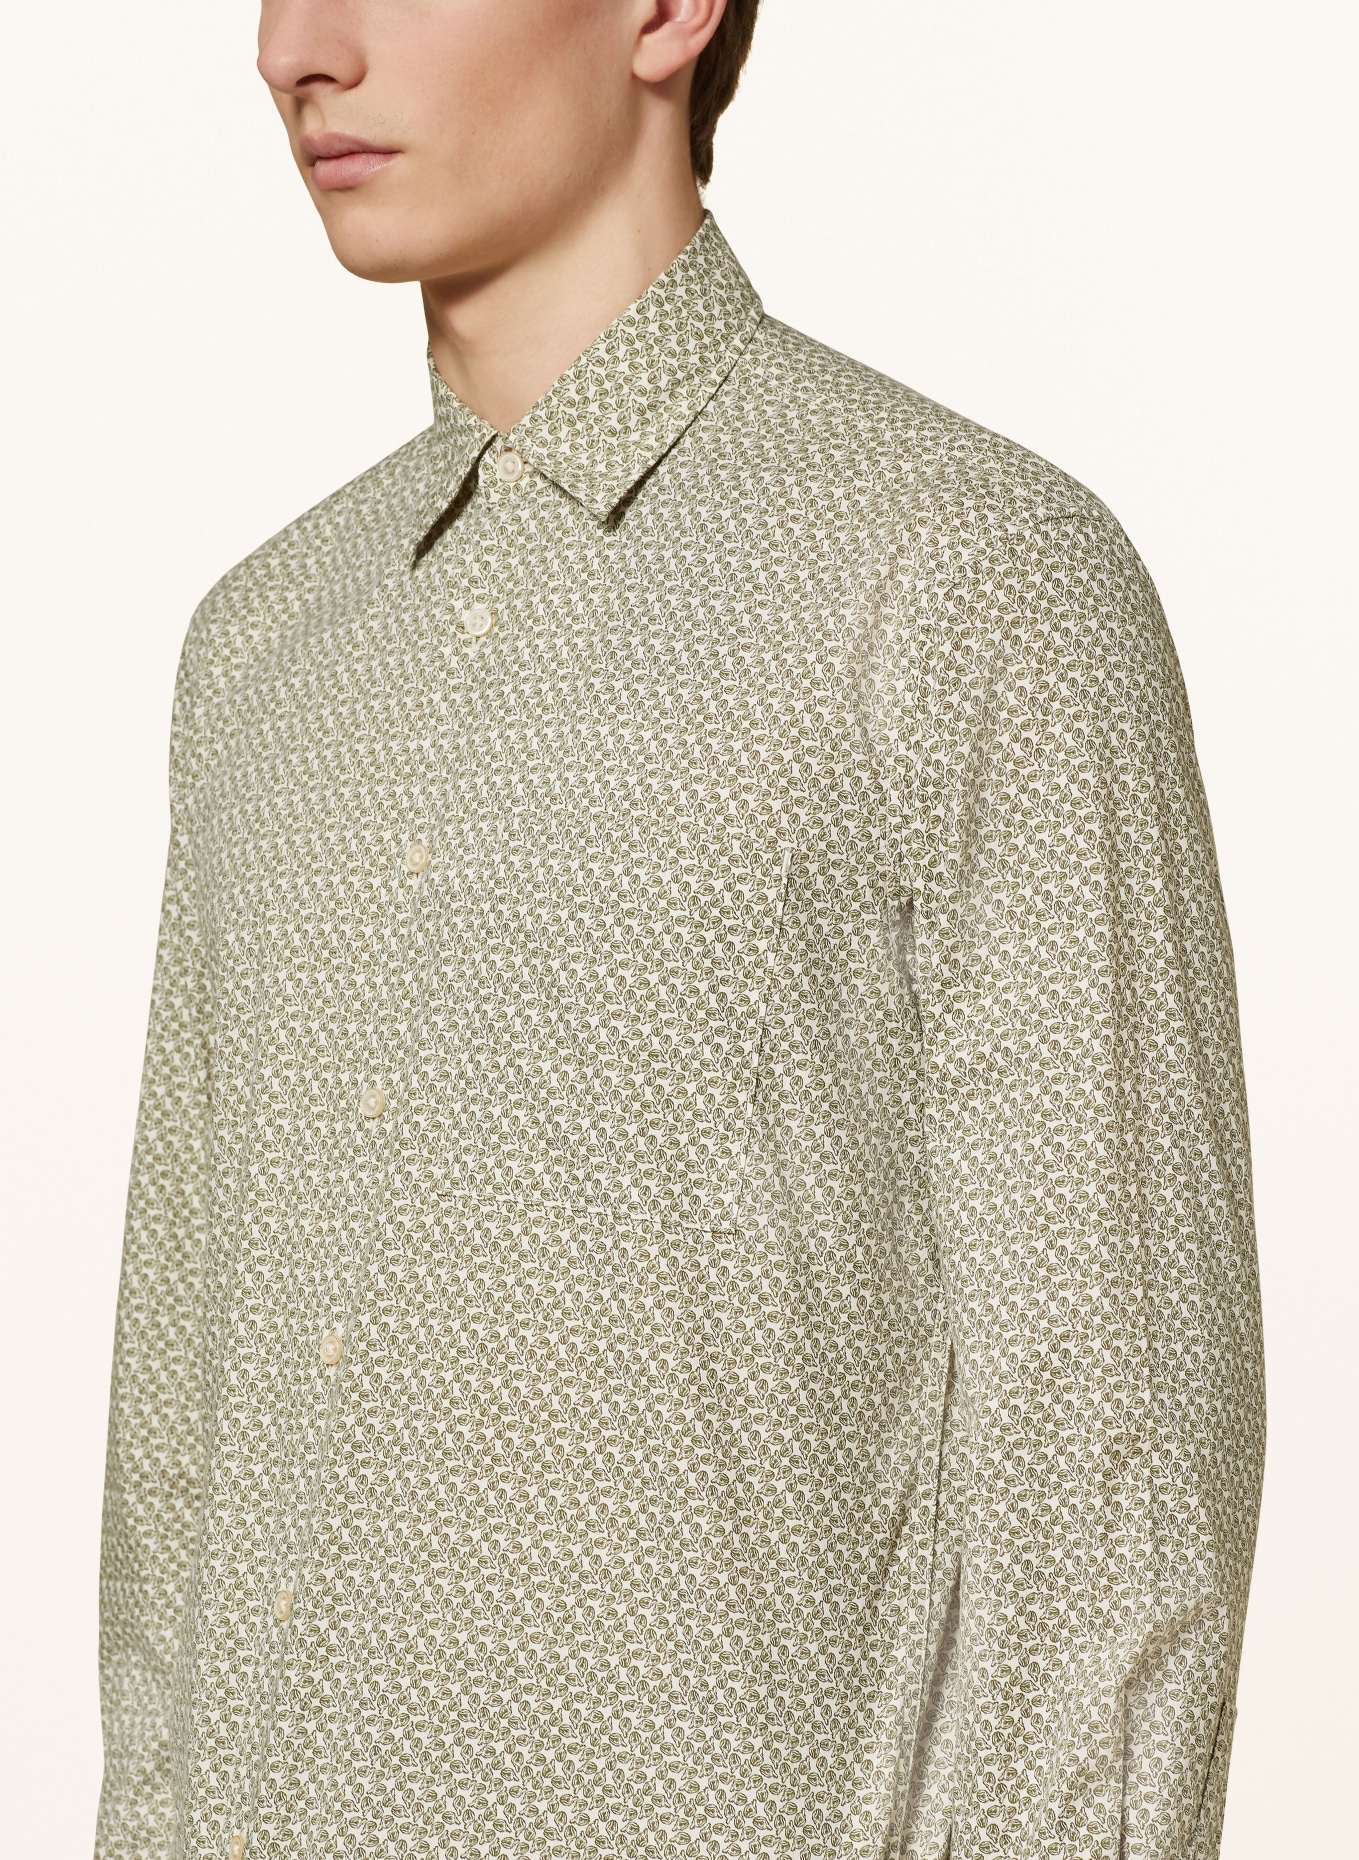 Marc O'Polo Shirt regular fit, Color: ECRU/ OLIVE (Image 4)